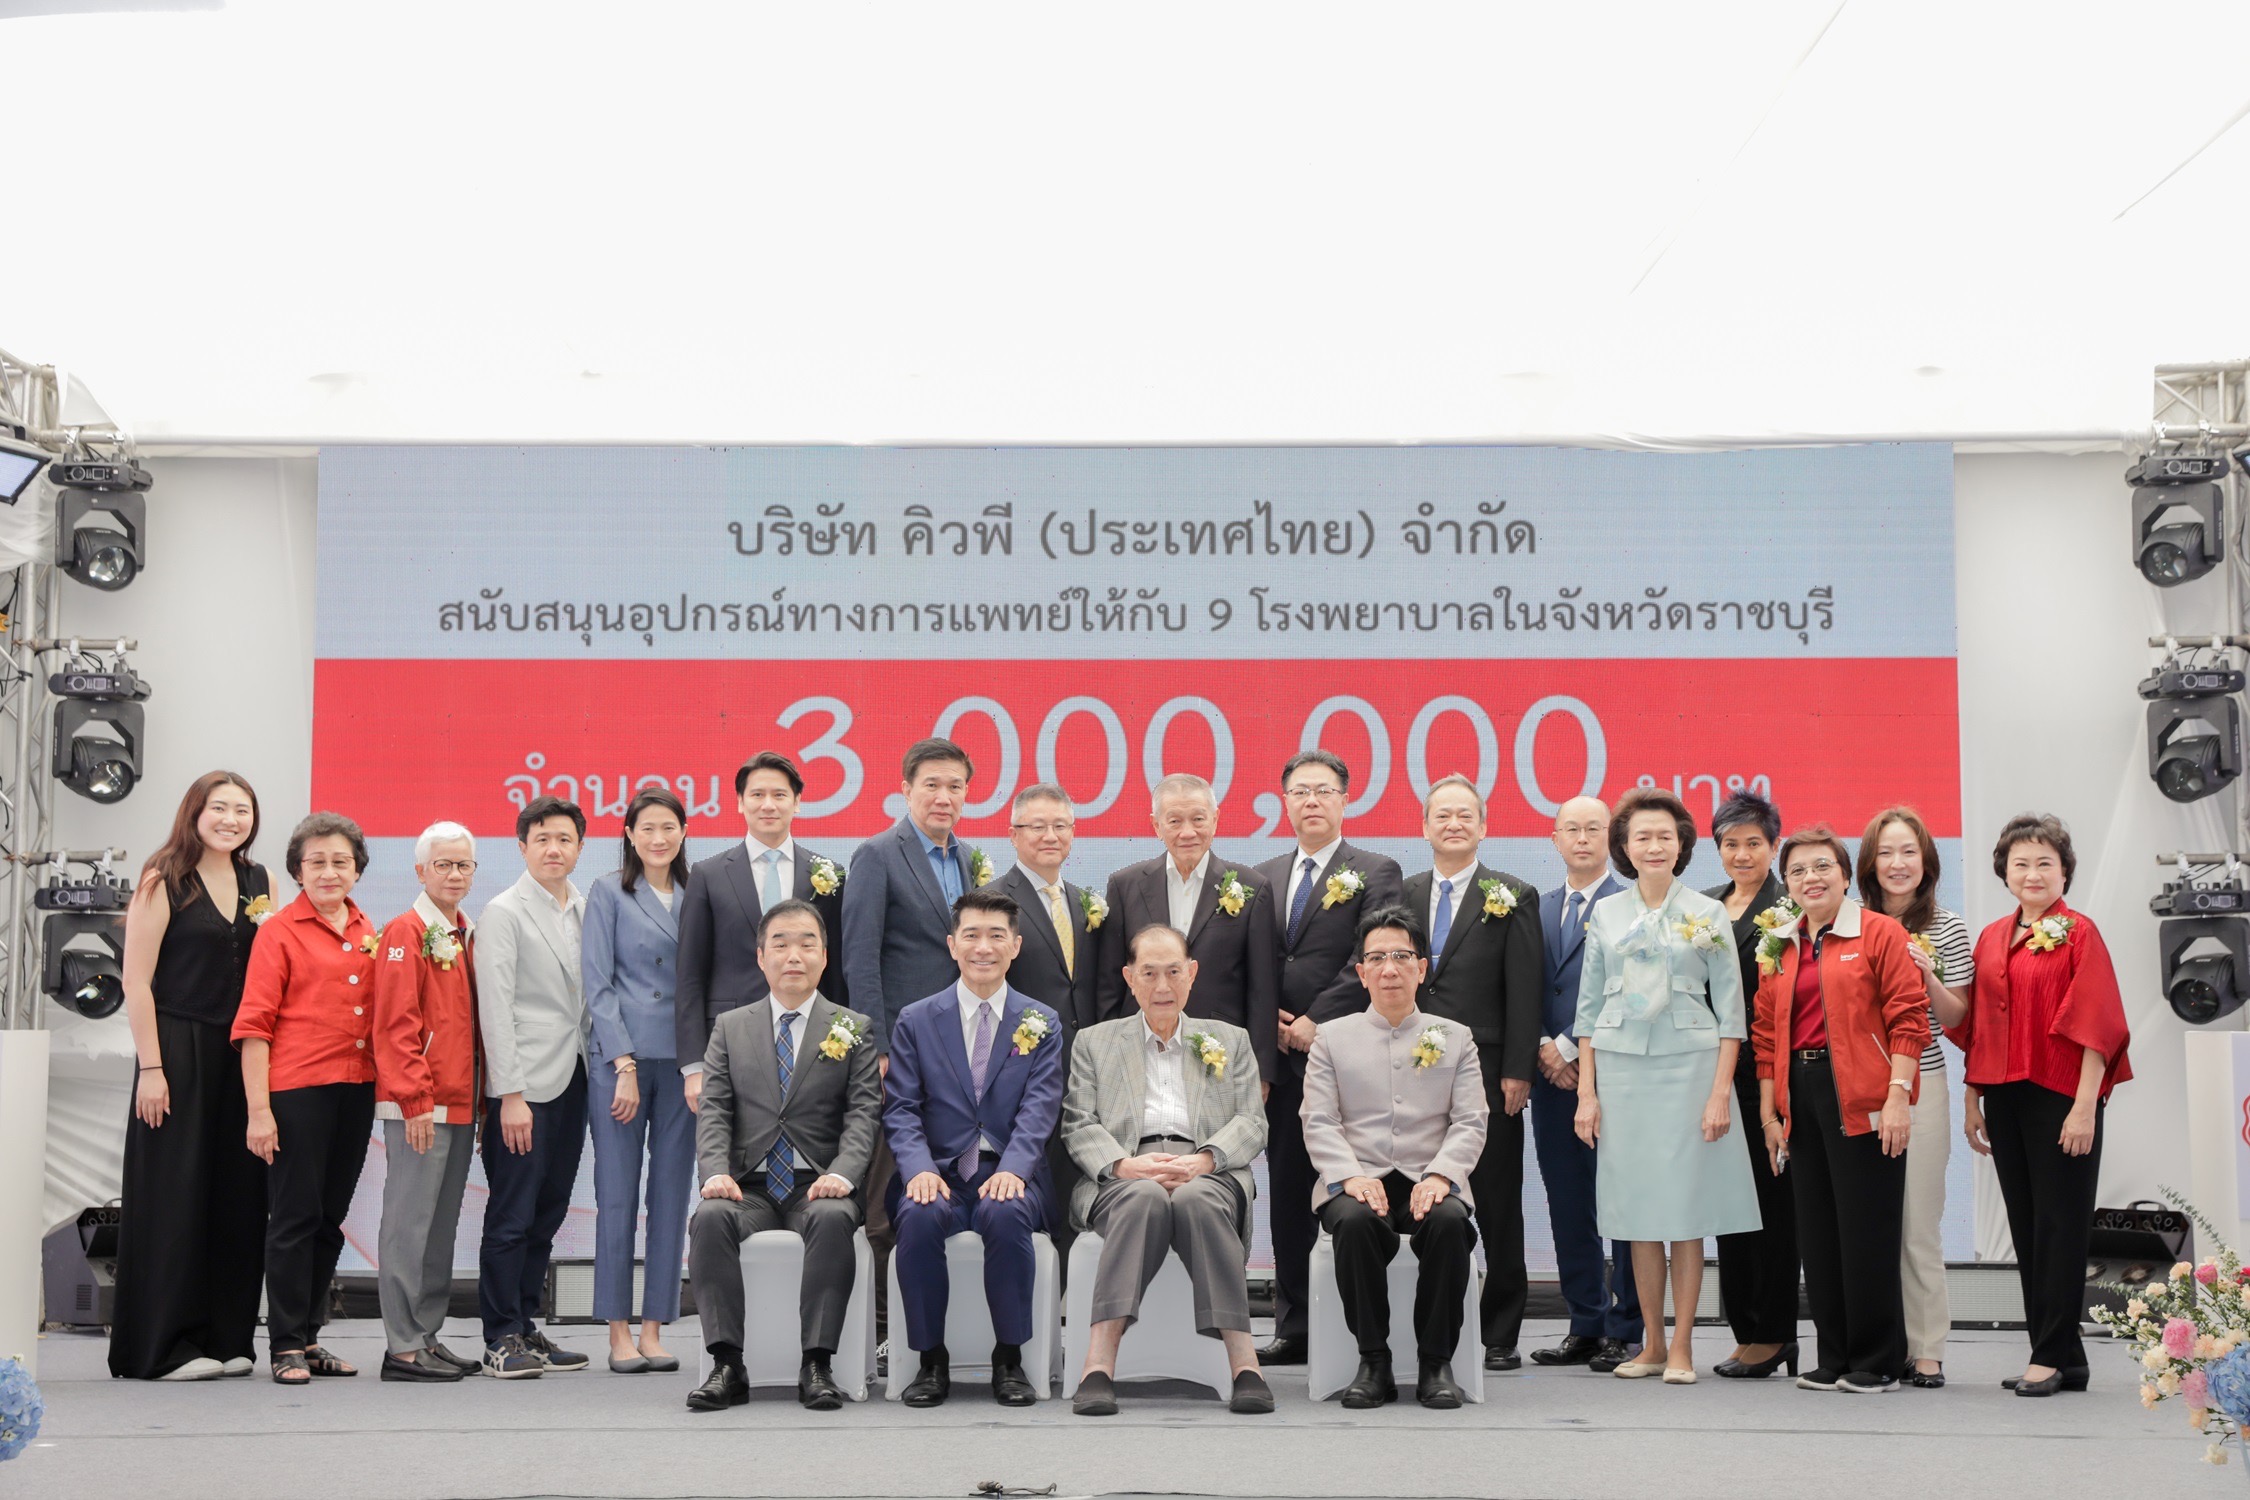 บริษัท คิวพี (ประเทศไทย) จำกัด มอบเงิน 3 ล้านบาท  สนับสนุนอุปกรณ์การแพทย์ให้โรงพยาบาลในราชบุรี 9 แห่ง